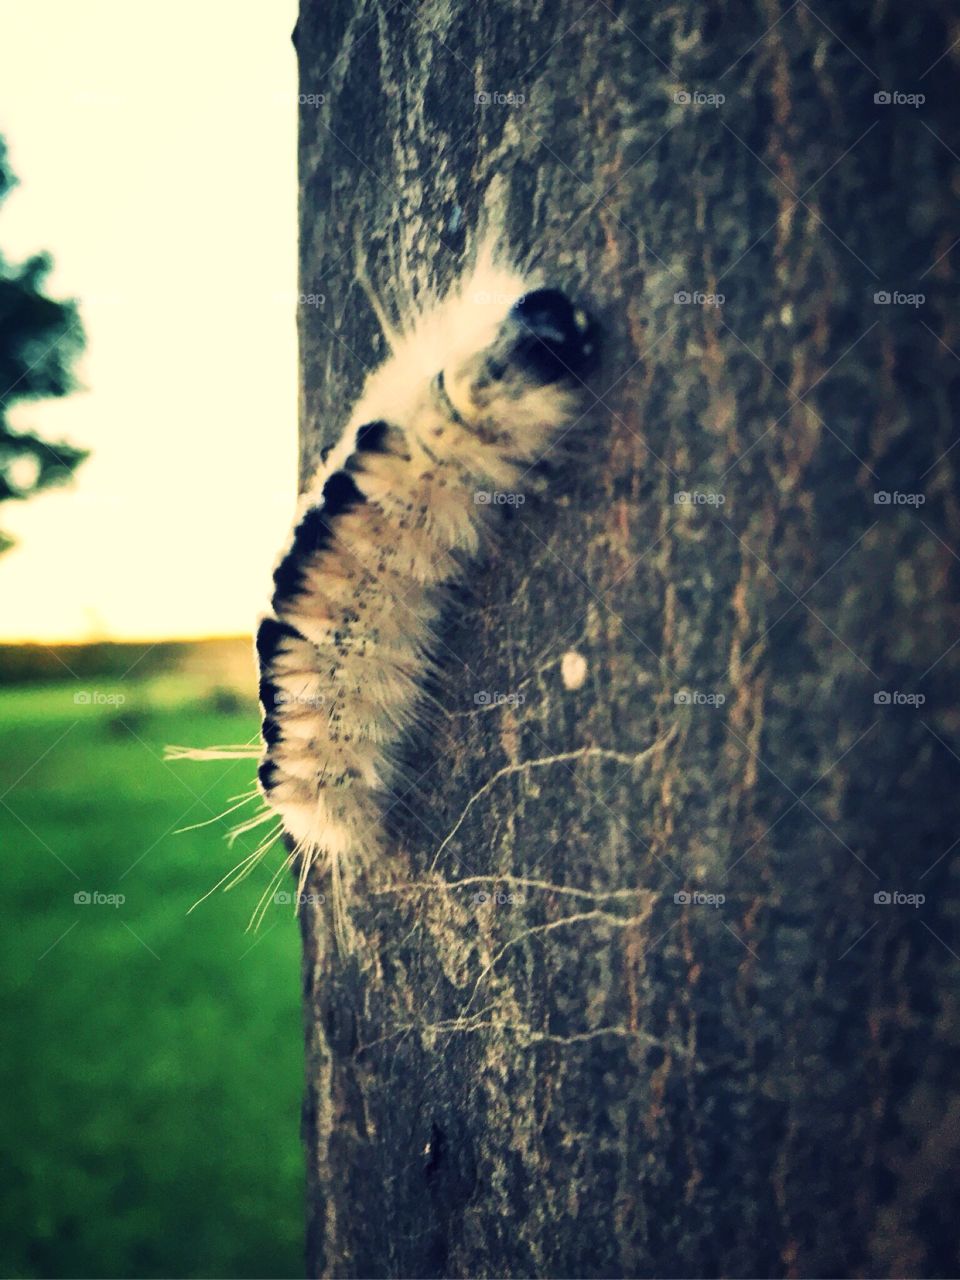 Fuzzy white Caterpillar. 